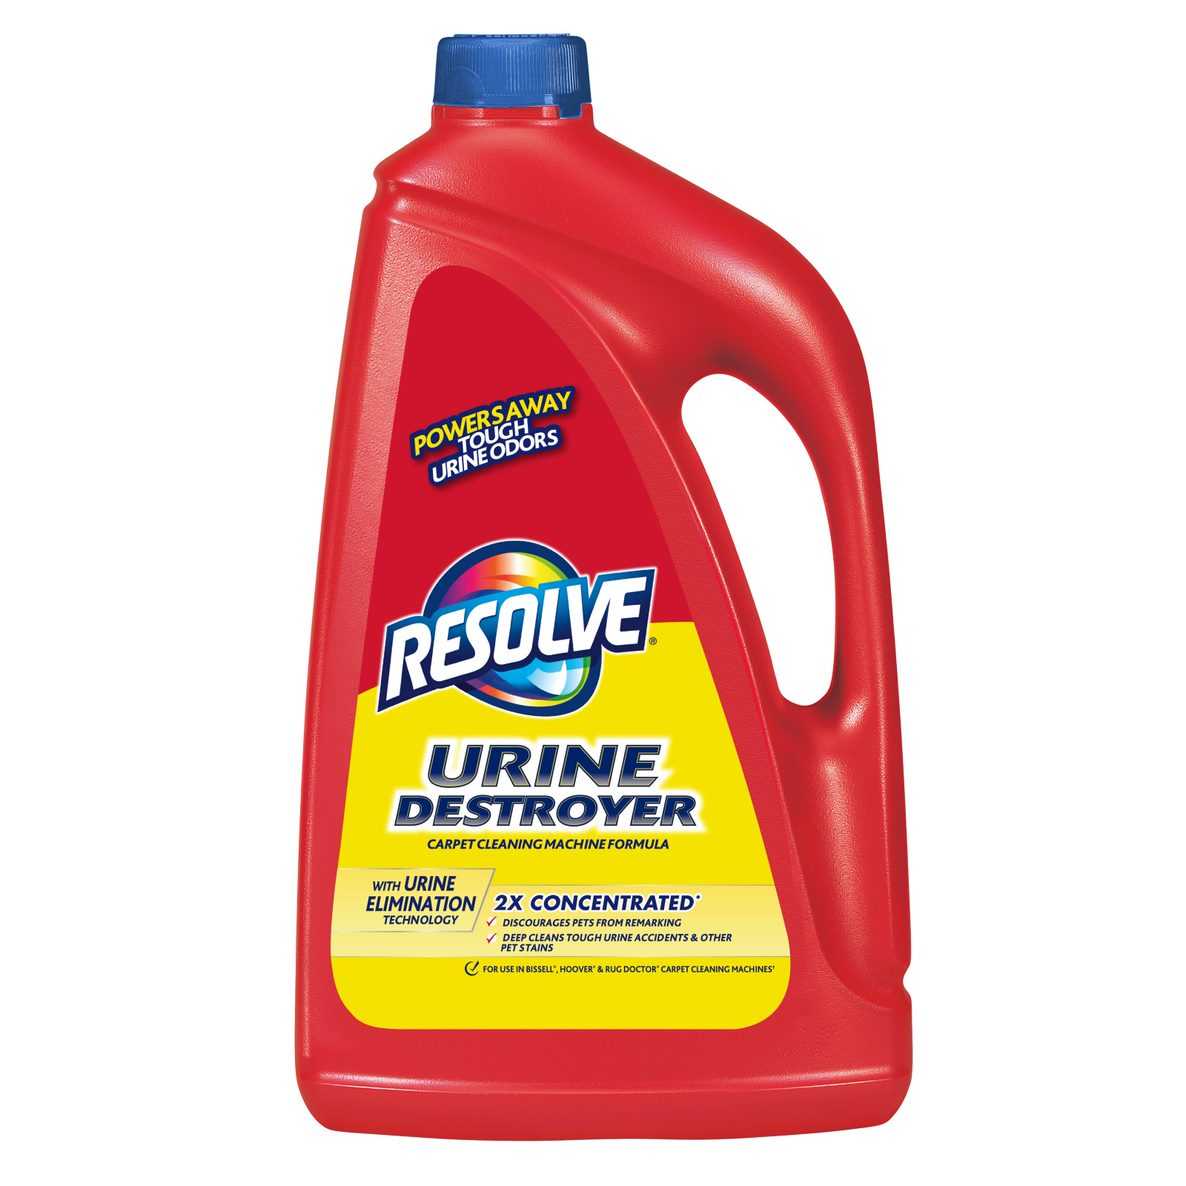 Resolve® Urine Destroyer Carpet Cleaning Machine Formula